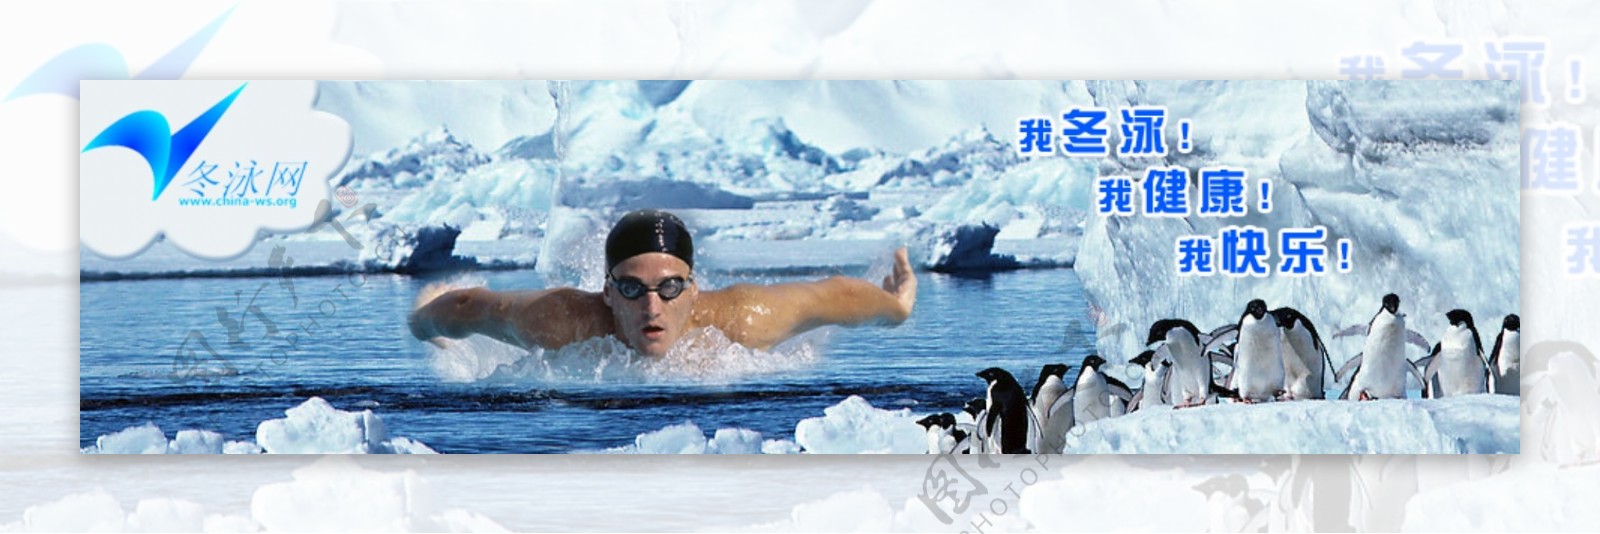 冬泳banner图片